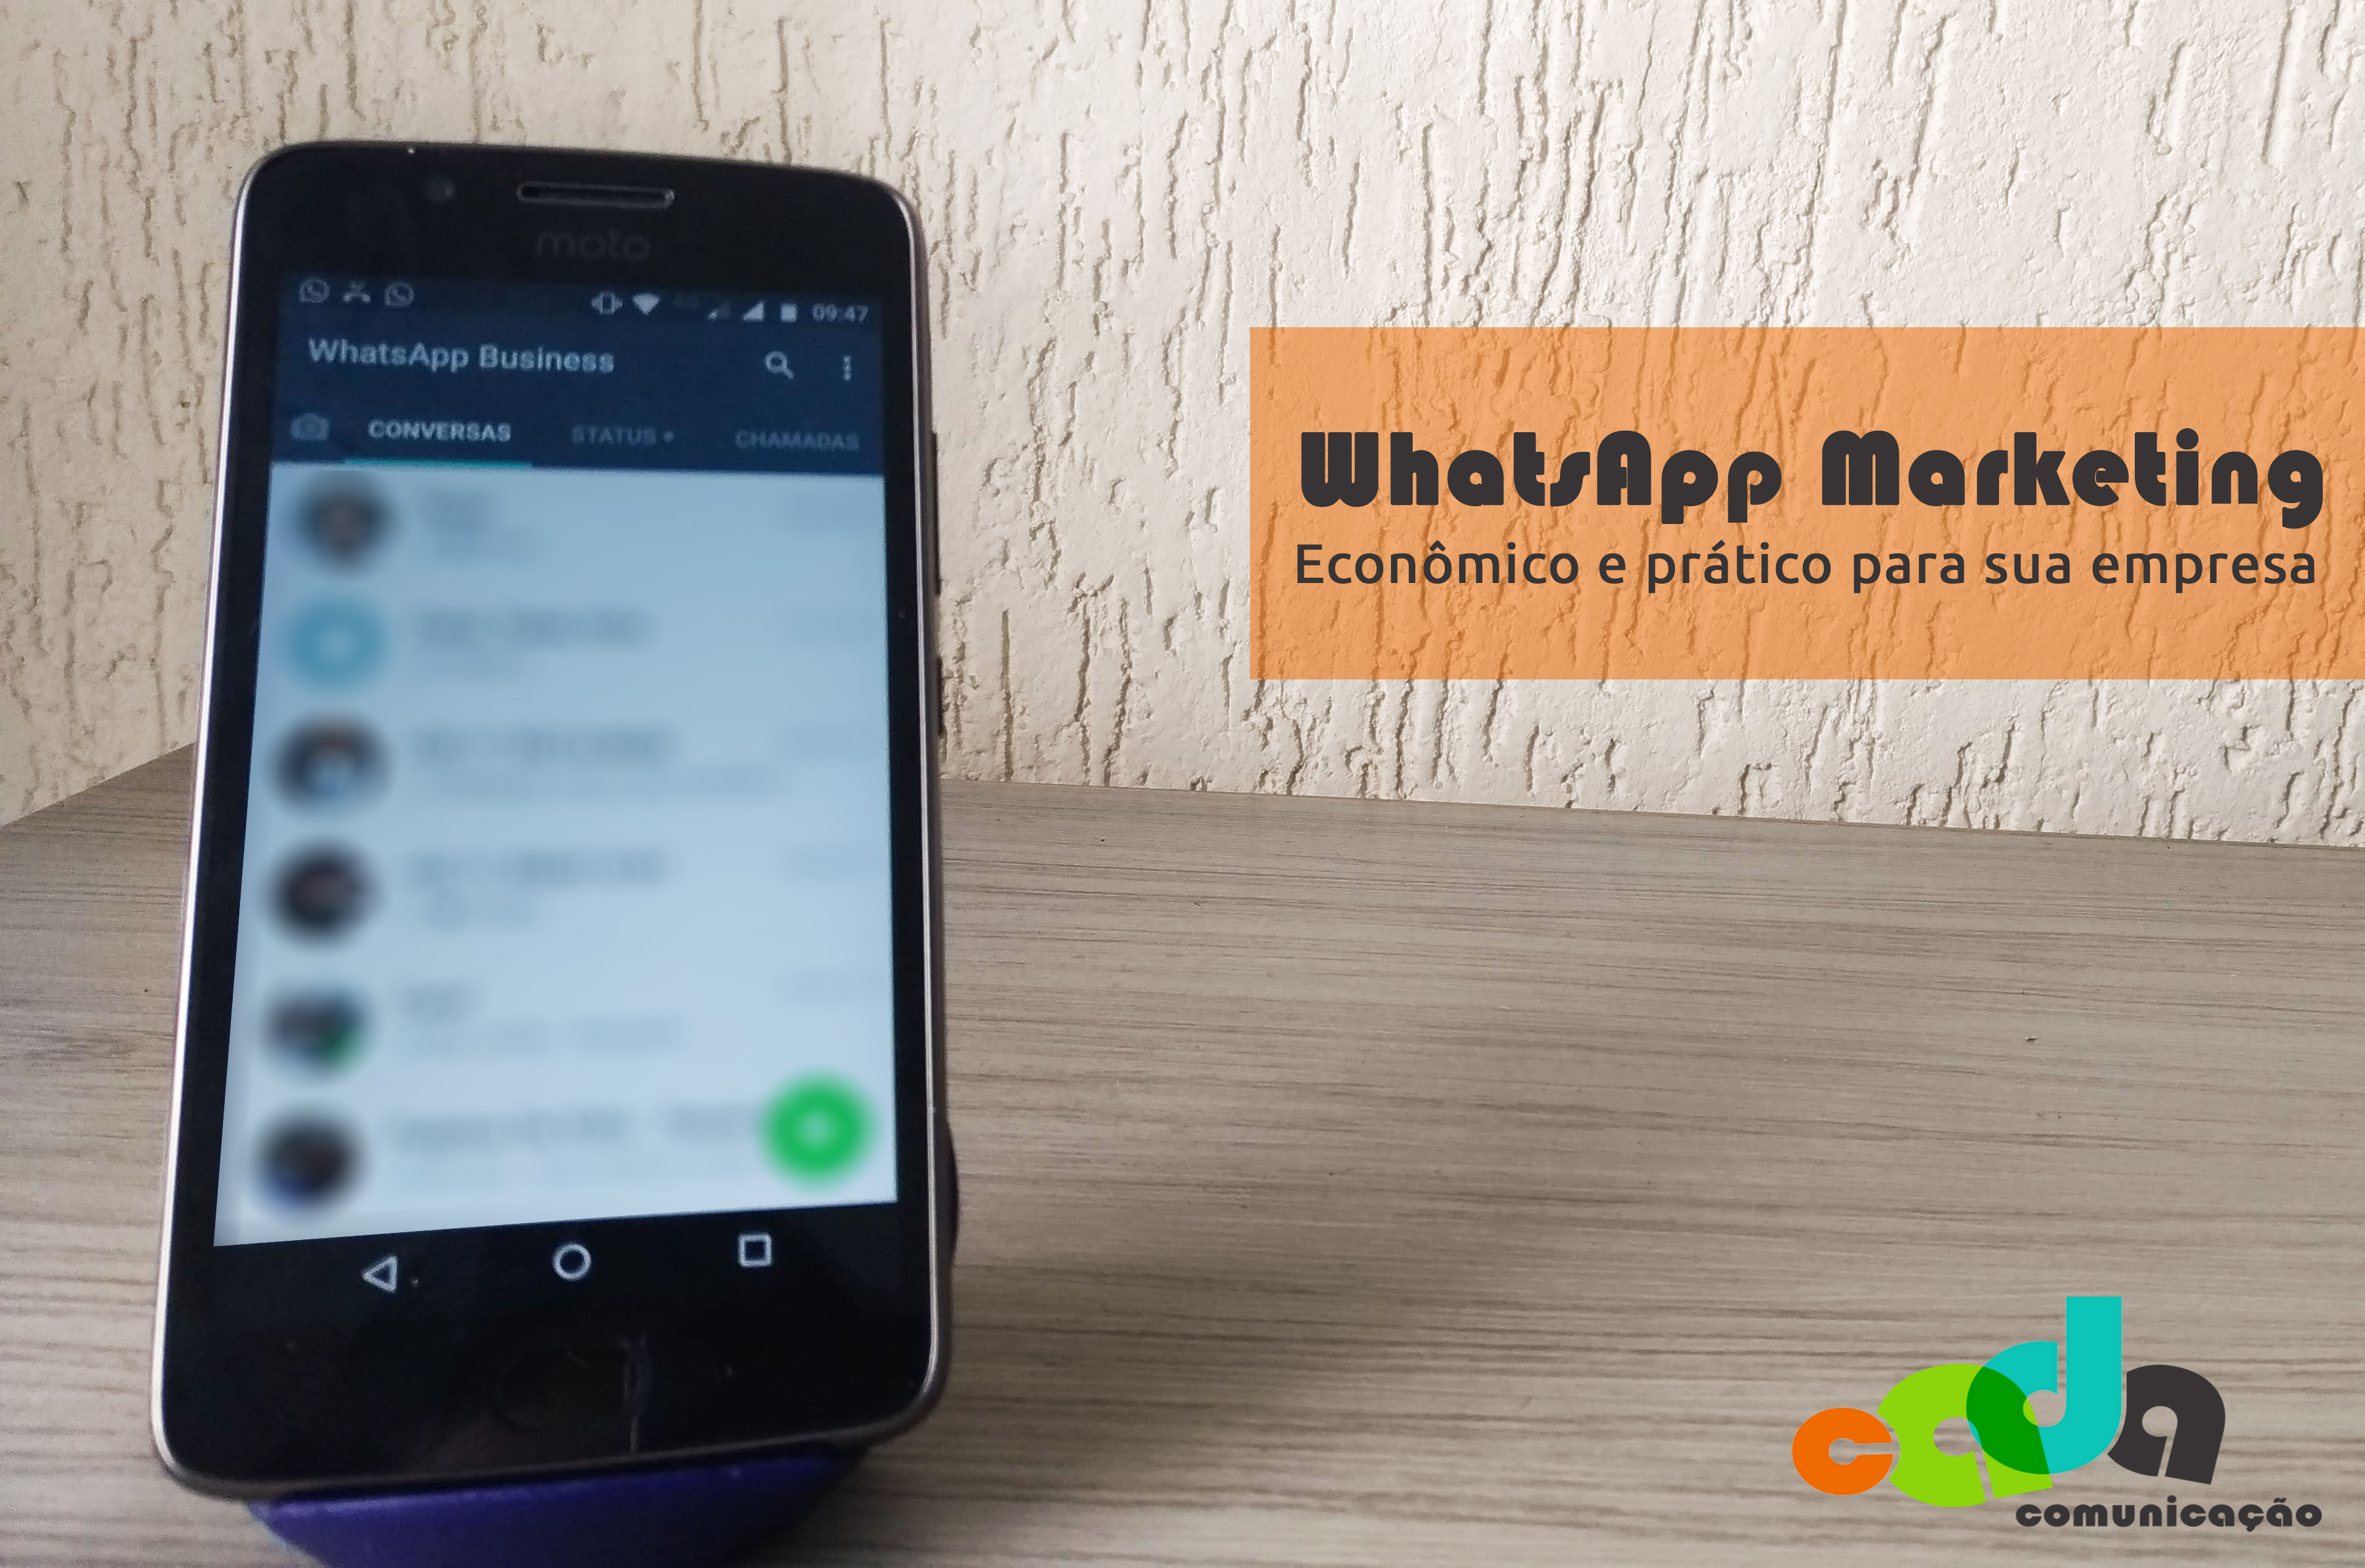 WhatsApp Marketing: econômico e prático para sua empresa!